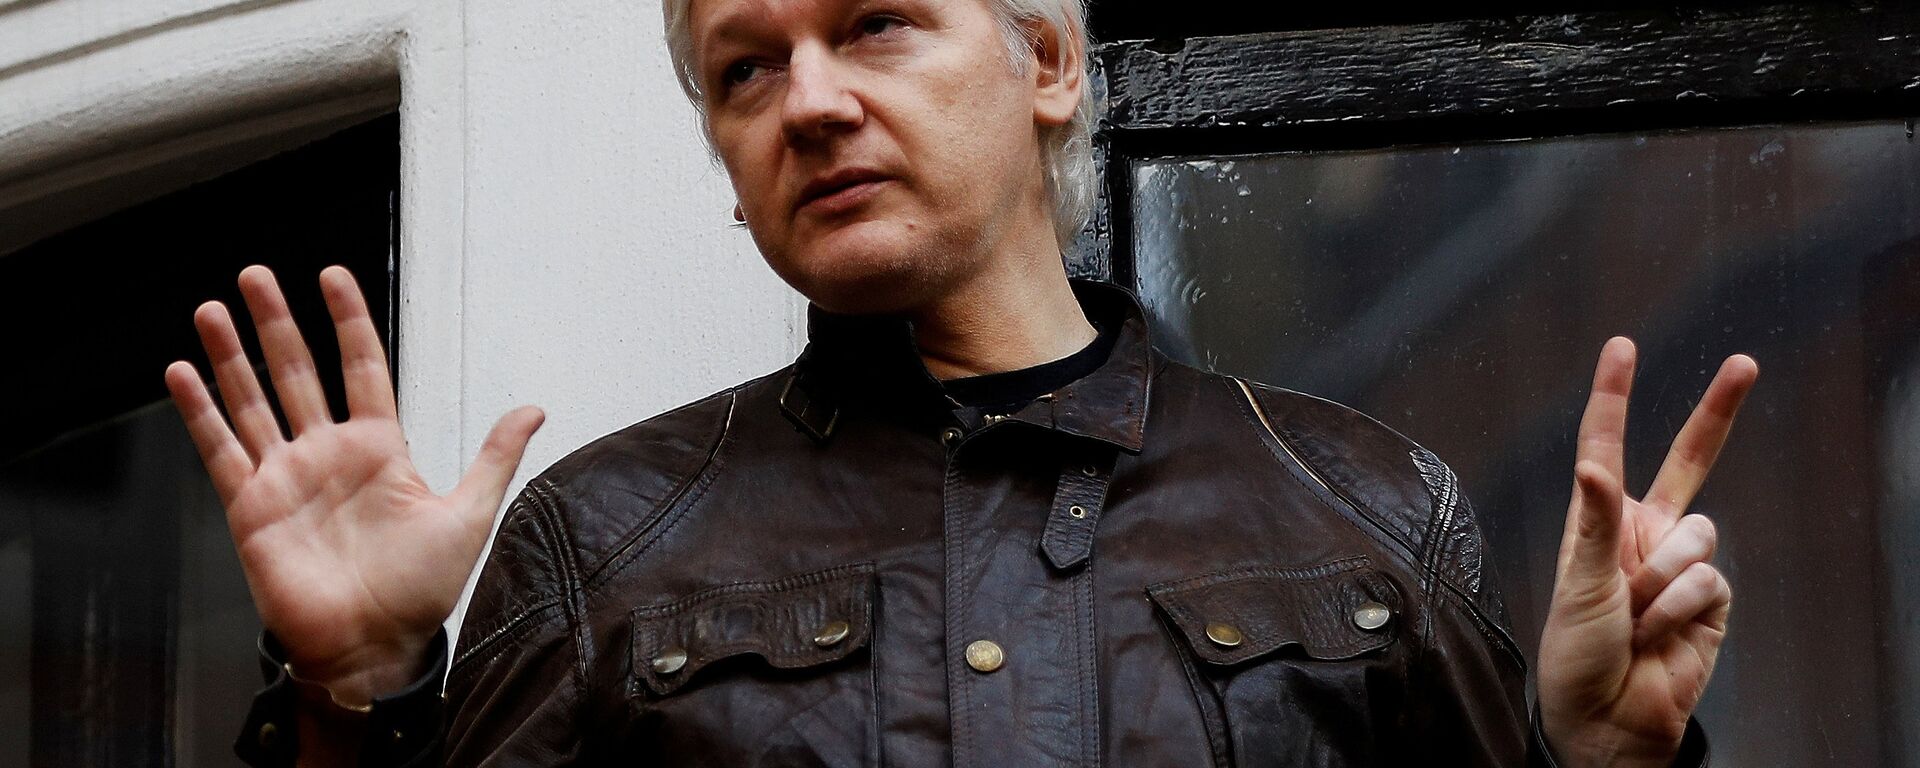 WikiLeaks'in kurucusu Julian Assange - Sputnik Türkiye, 1920, 28.09.2021